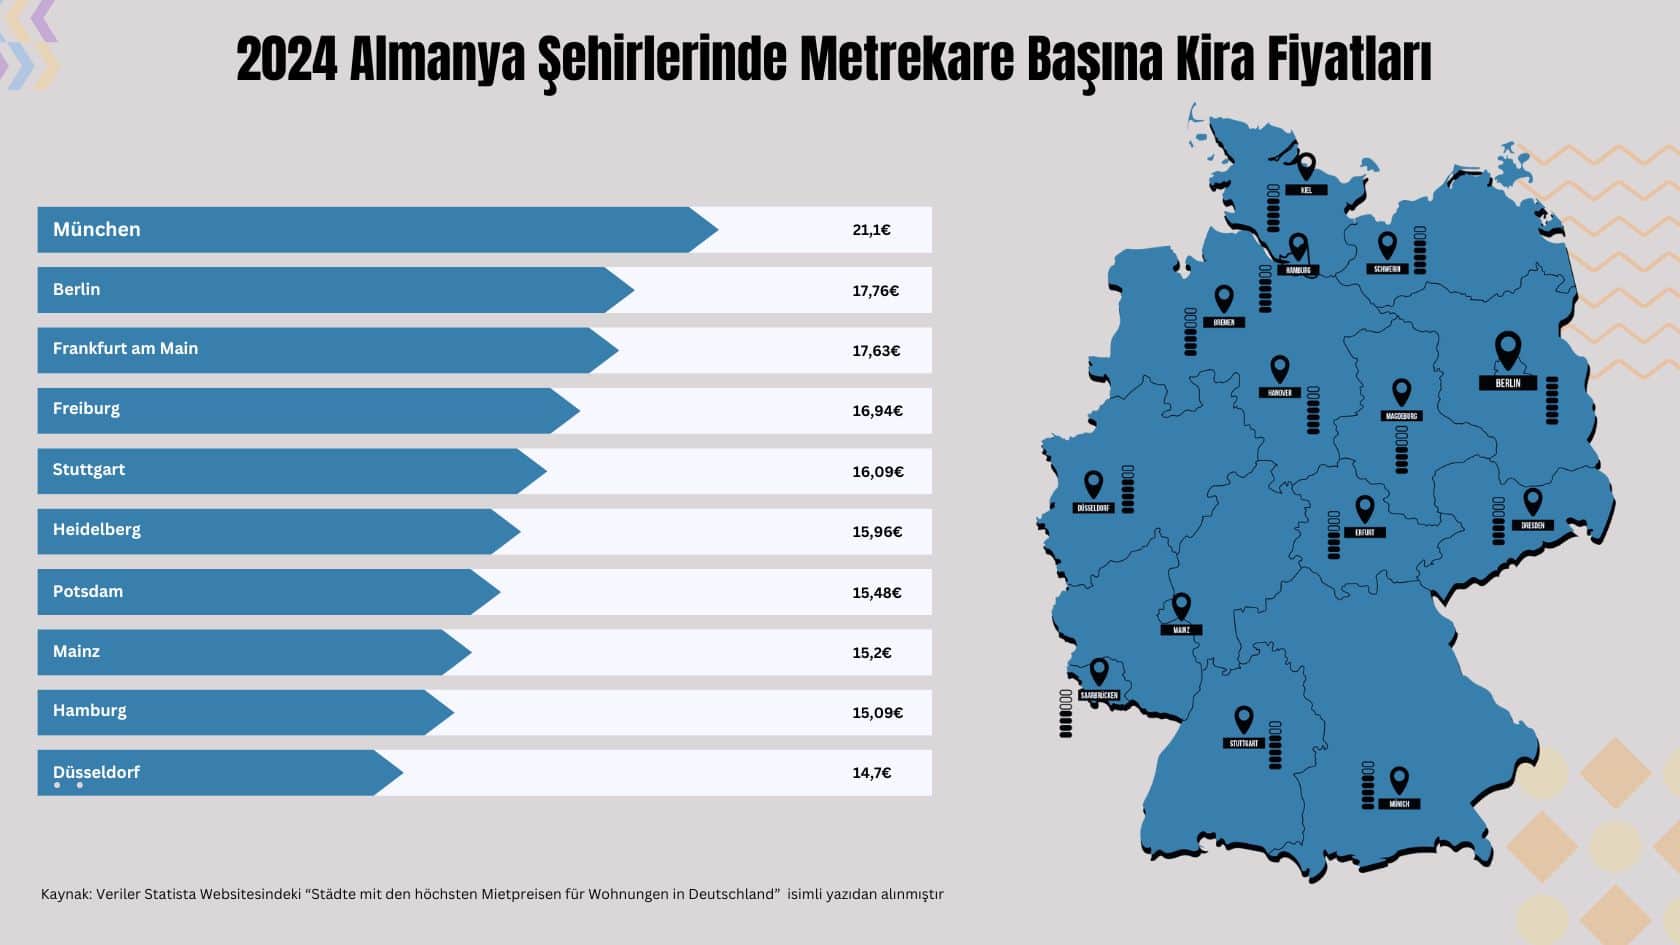 2024 Almanya Şehirlerinde Metrekare Başına Kira Fiyatlarını gösteren chart